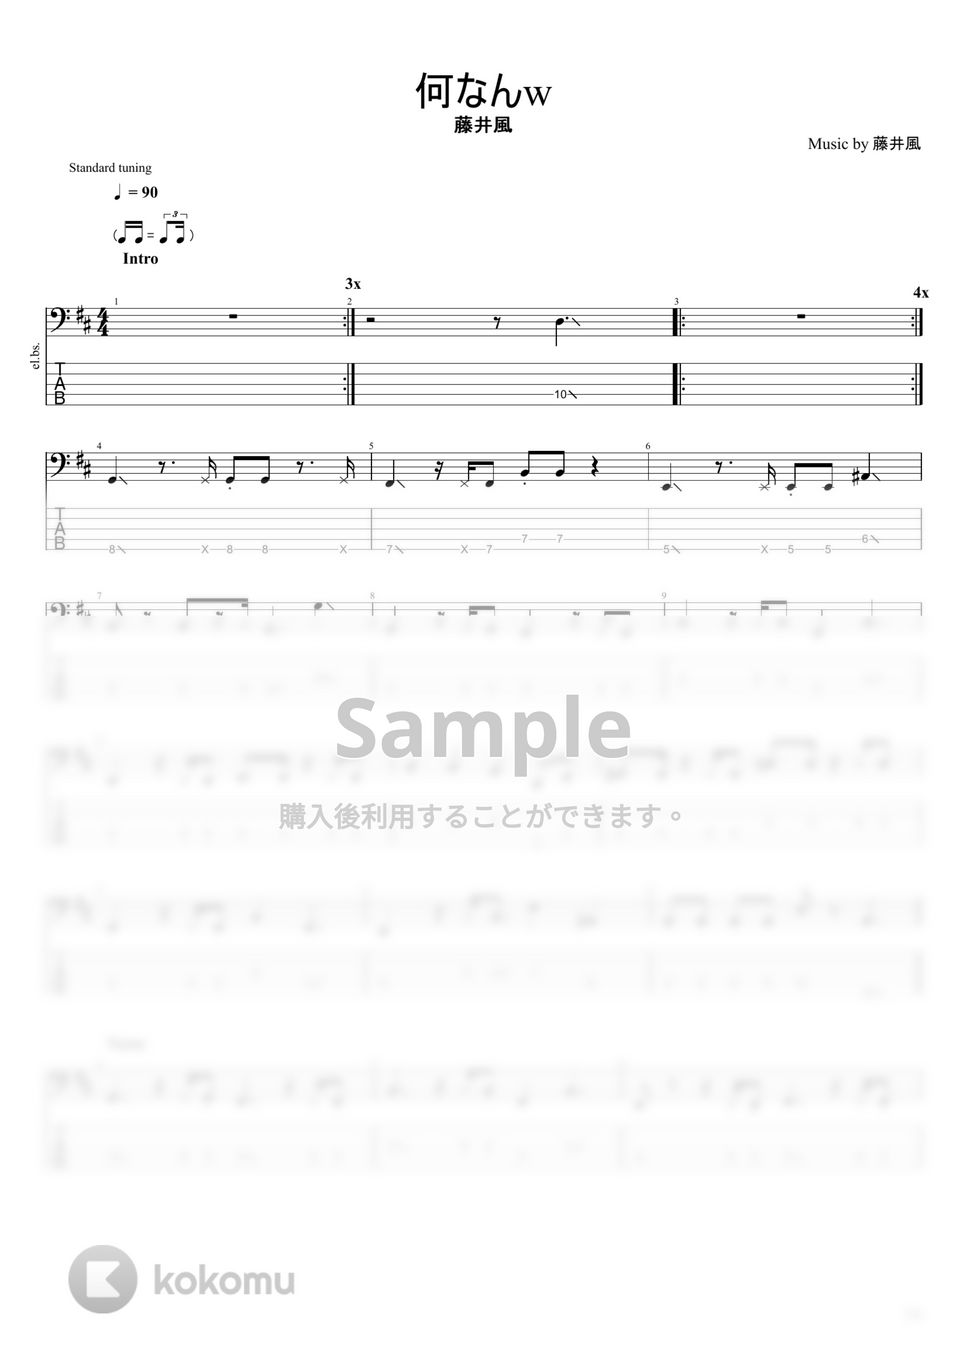 藤井風 - 何なんw (5弦) by まっきん